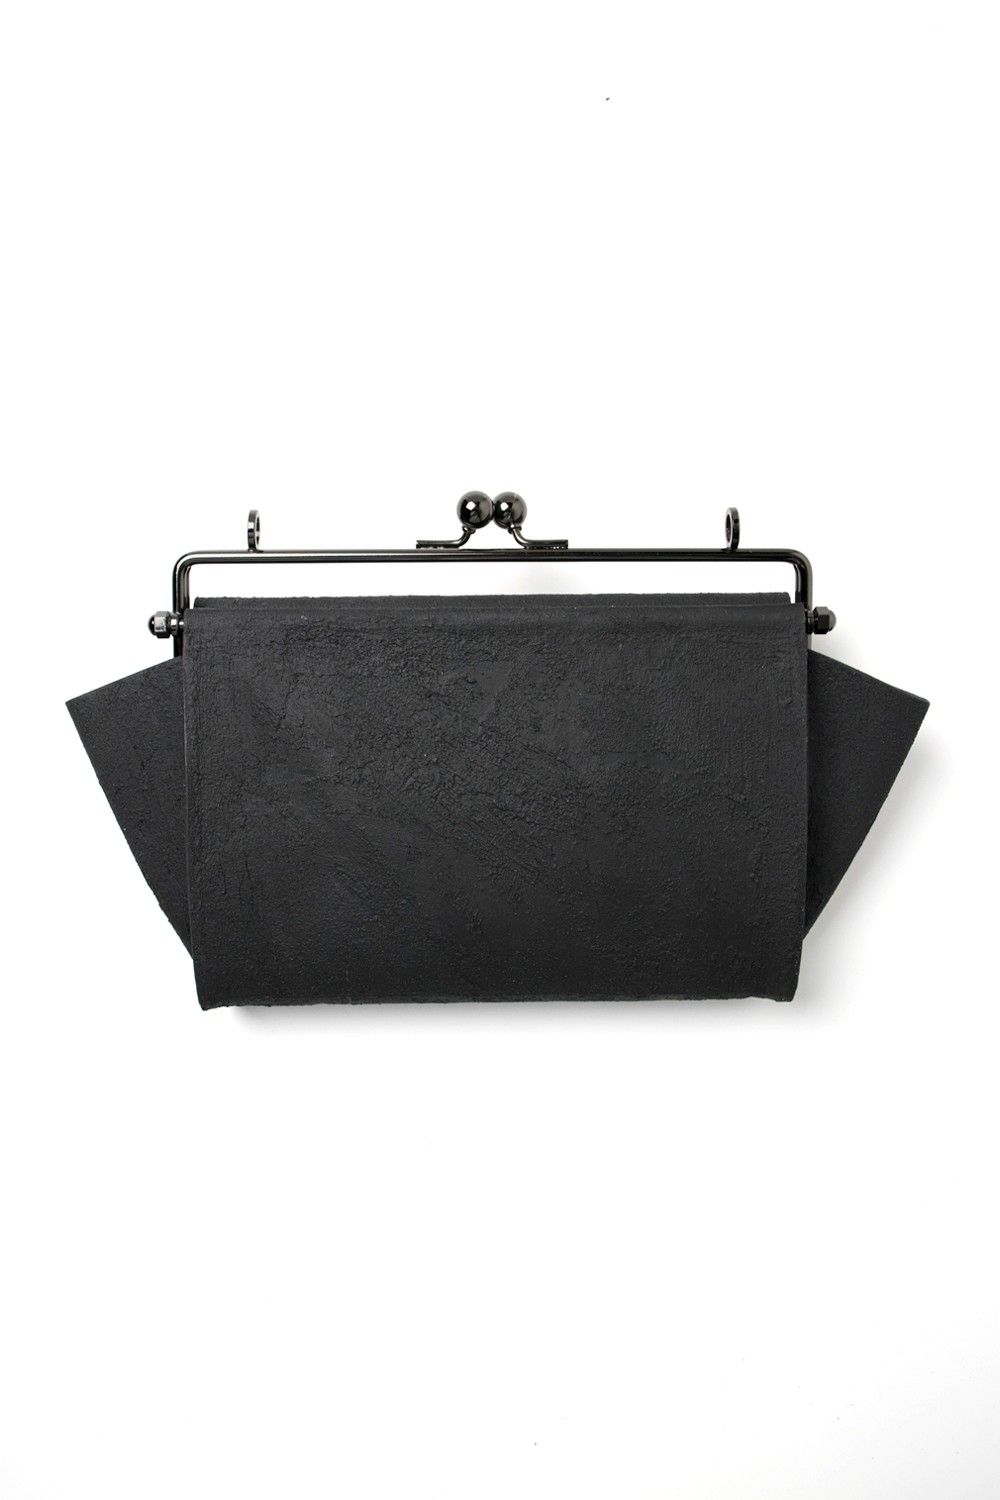 KAGARI YUSUKE - 何かのパーツ長財布 [黒い壁] / mw05-bk | BONITA 